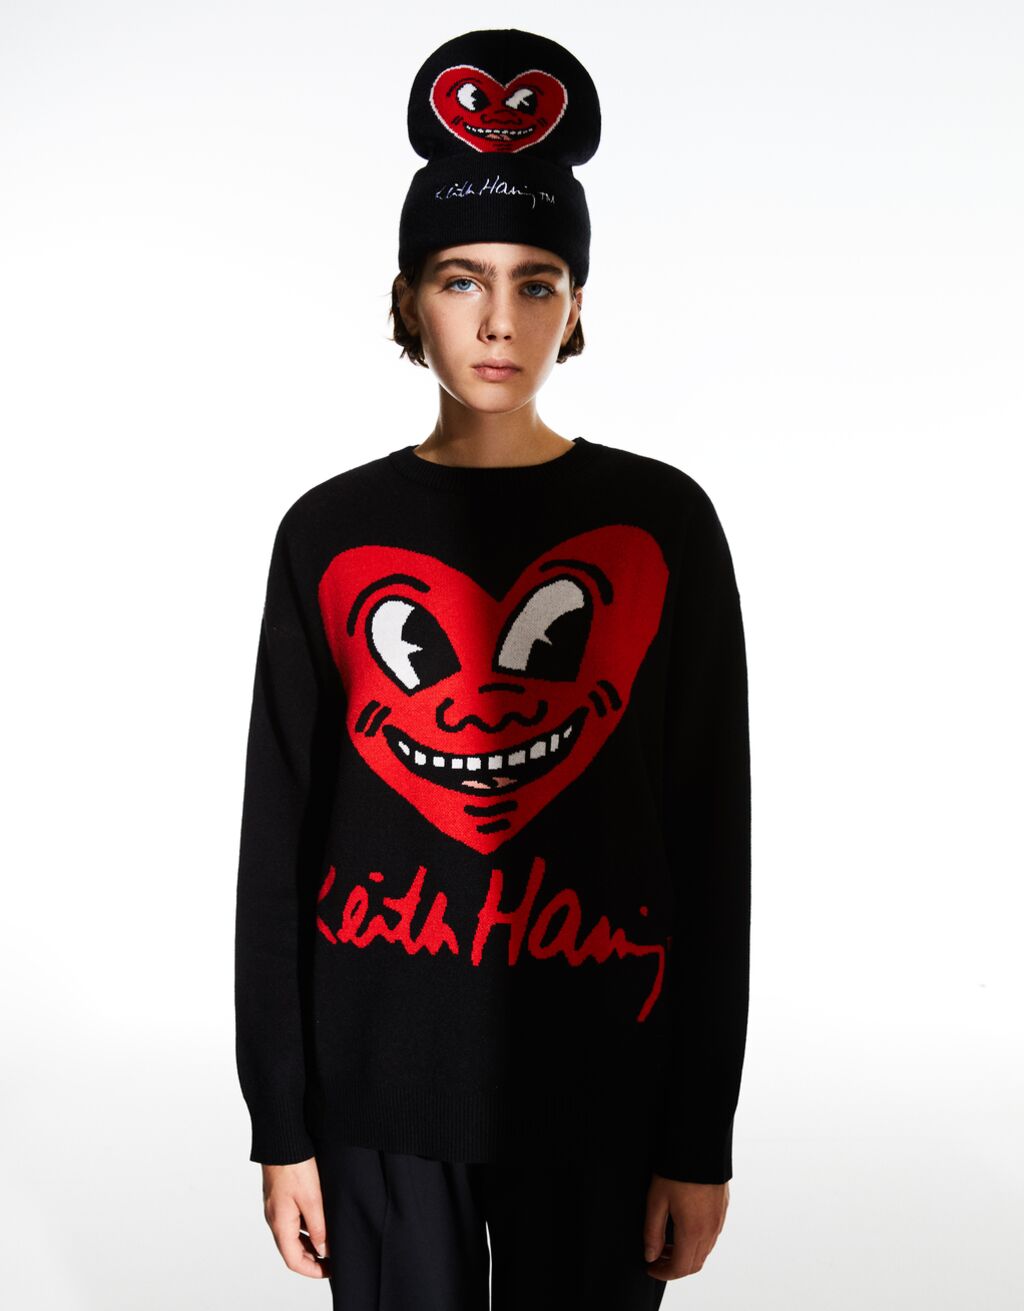 Sweater com estampado Keith Haring